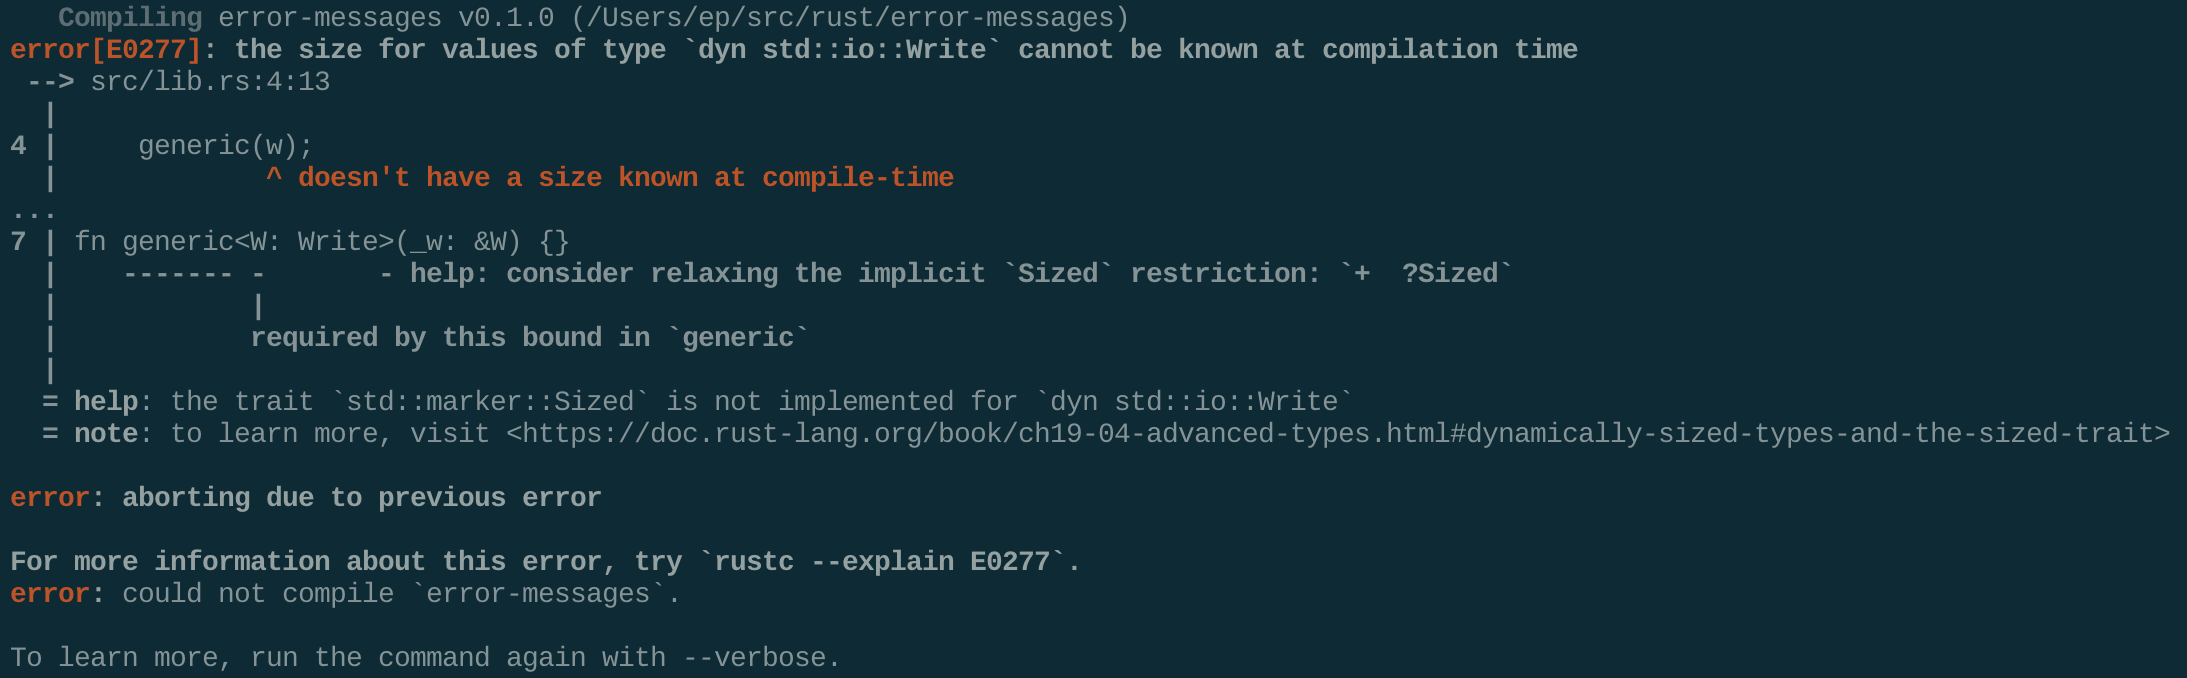 A terminal screenshot of the 1.43.0 error message.